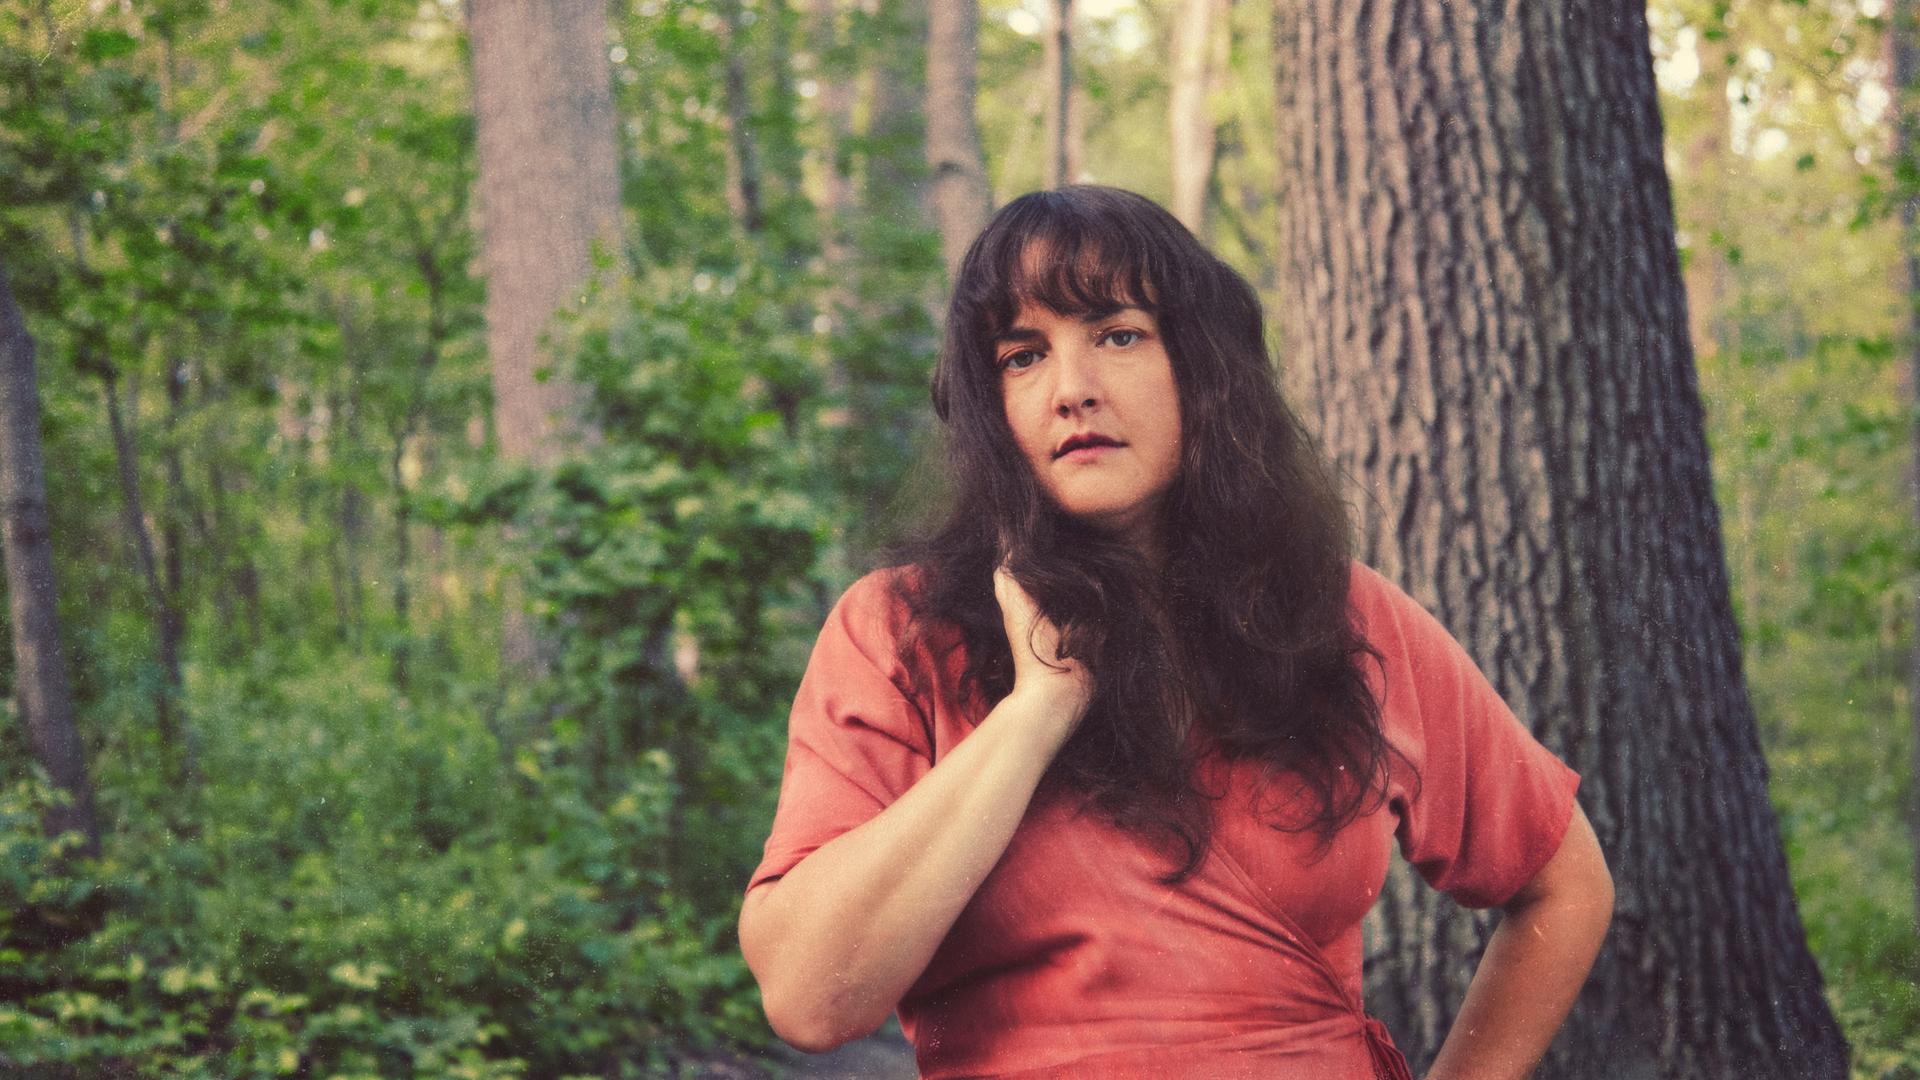 Sängerin Abigail Lapell steht in einem frischen, grünen Wald vor einem großen Baum in rotem Wickelkleid und offenen dunklen, leicht welligen Haaren.